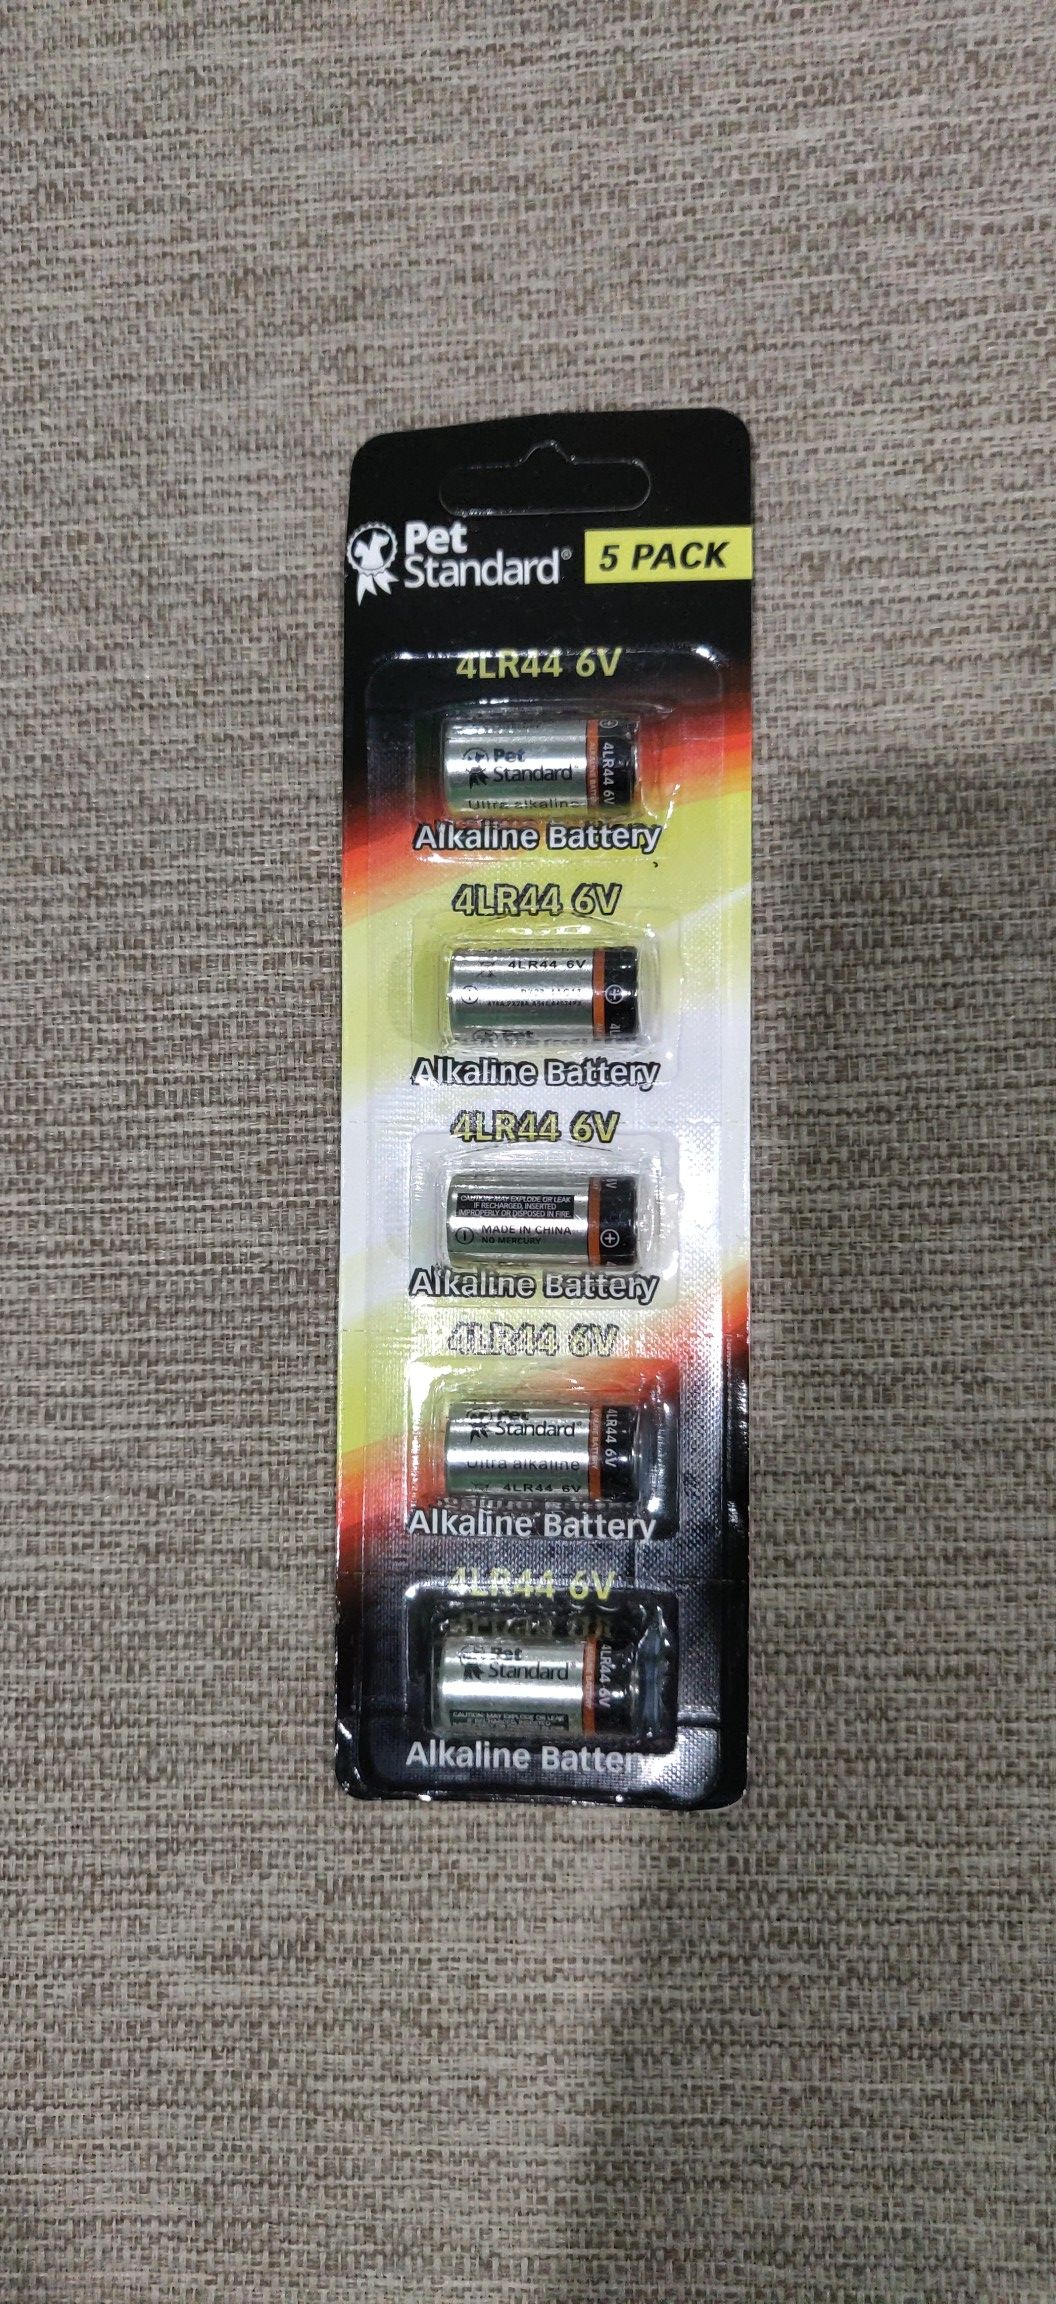 Brand New one pack of 5 batteries for dog collar (4LR44 6V)